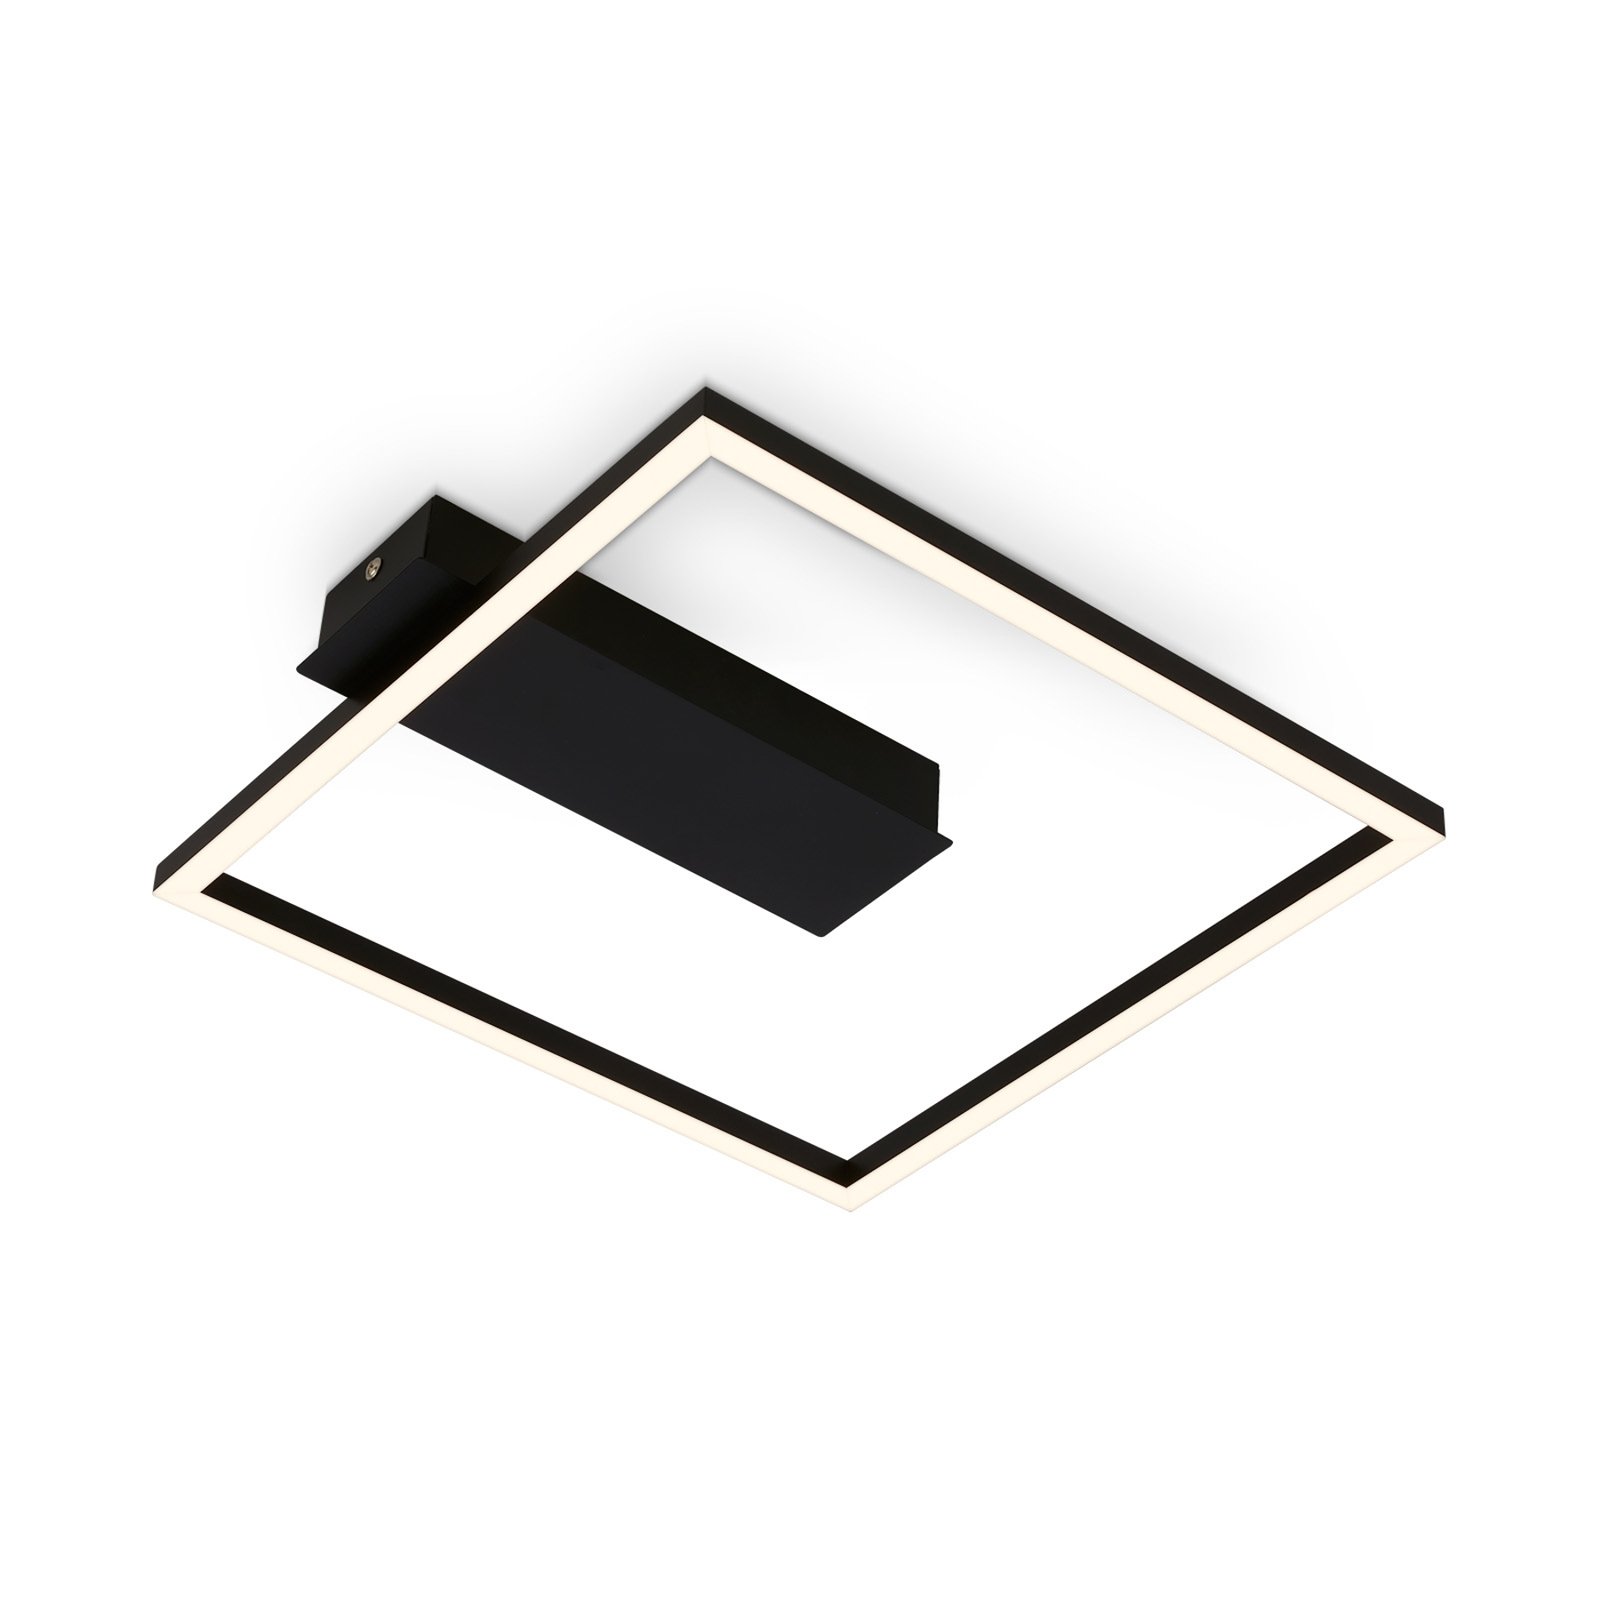 Lampa sufitowa LED 3771 w kształcie ramki, czarna